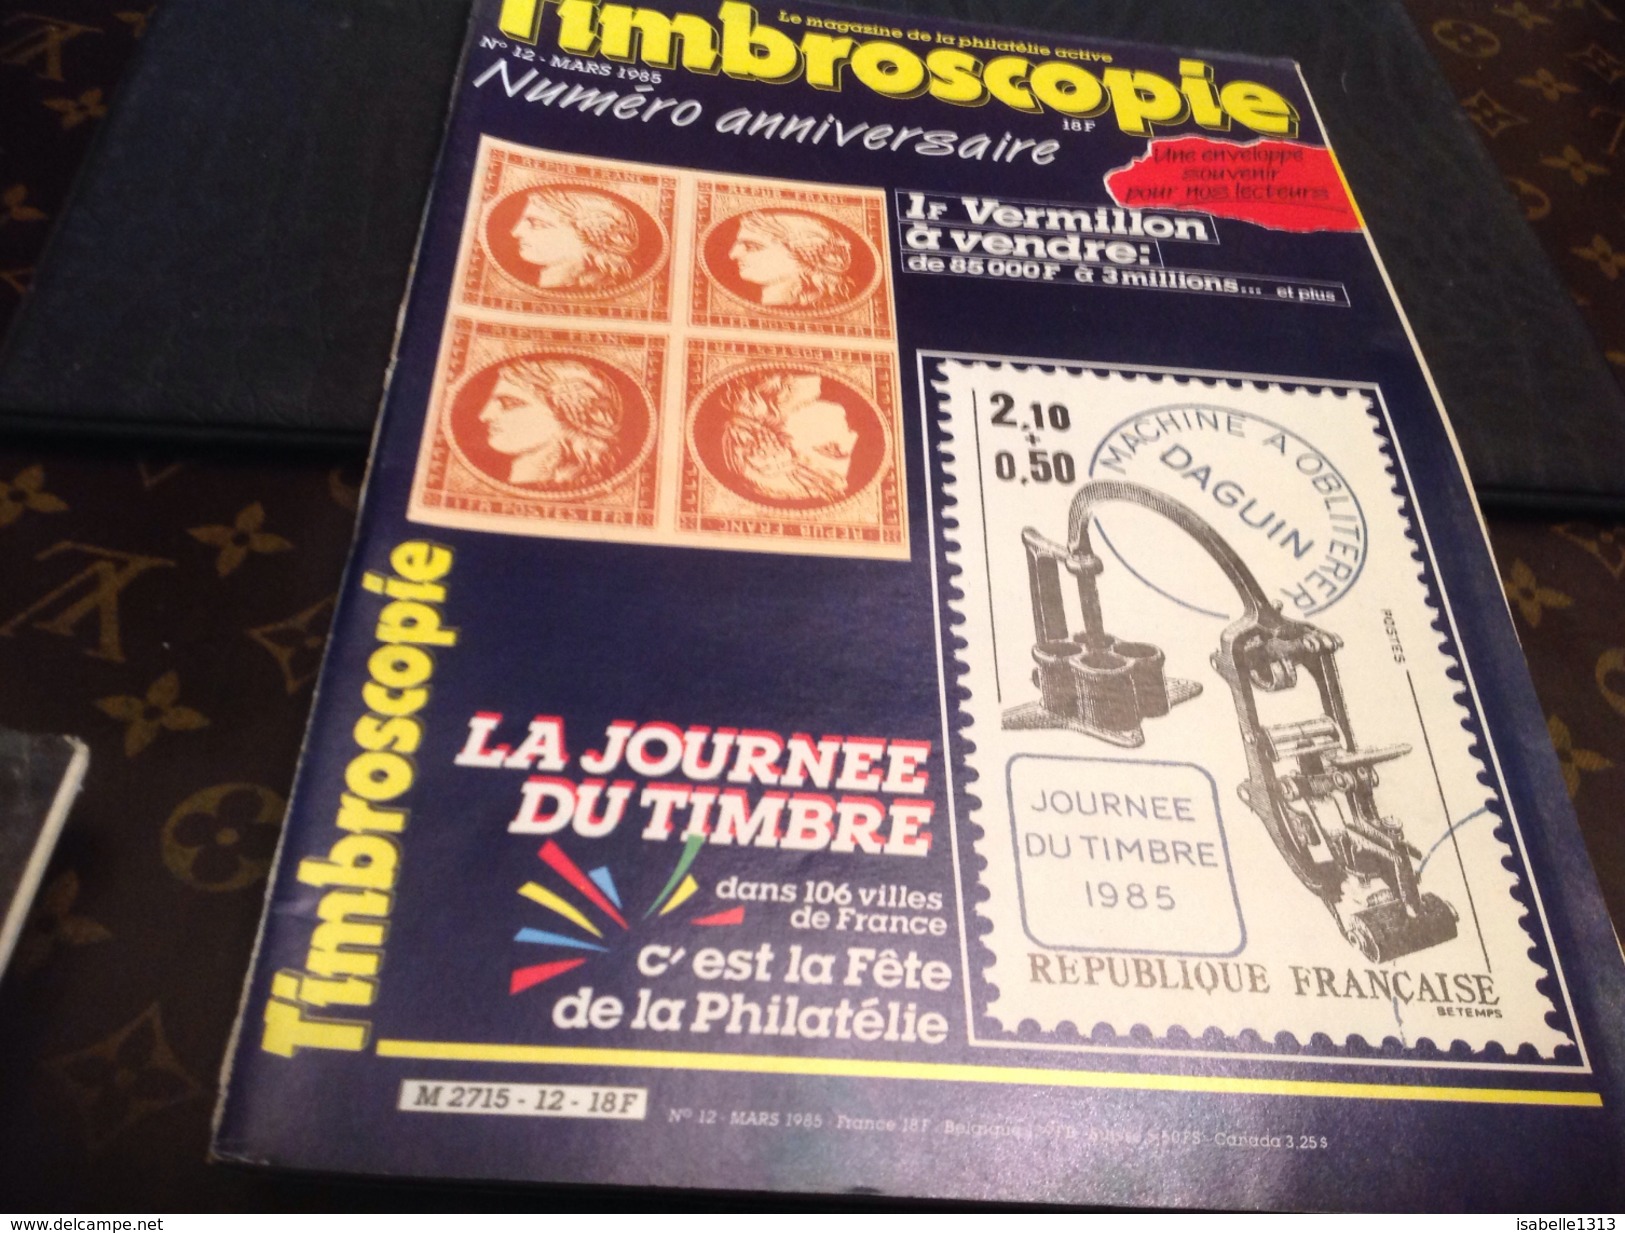 Timbroscopie 1985  Numéro Anniversaire - Français (jusque 1940)